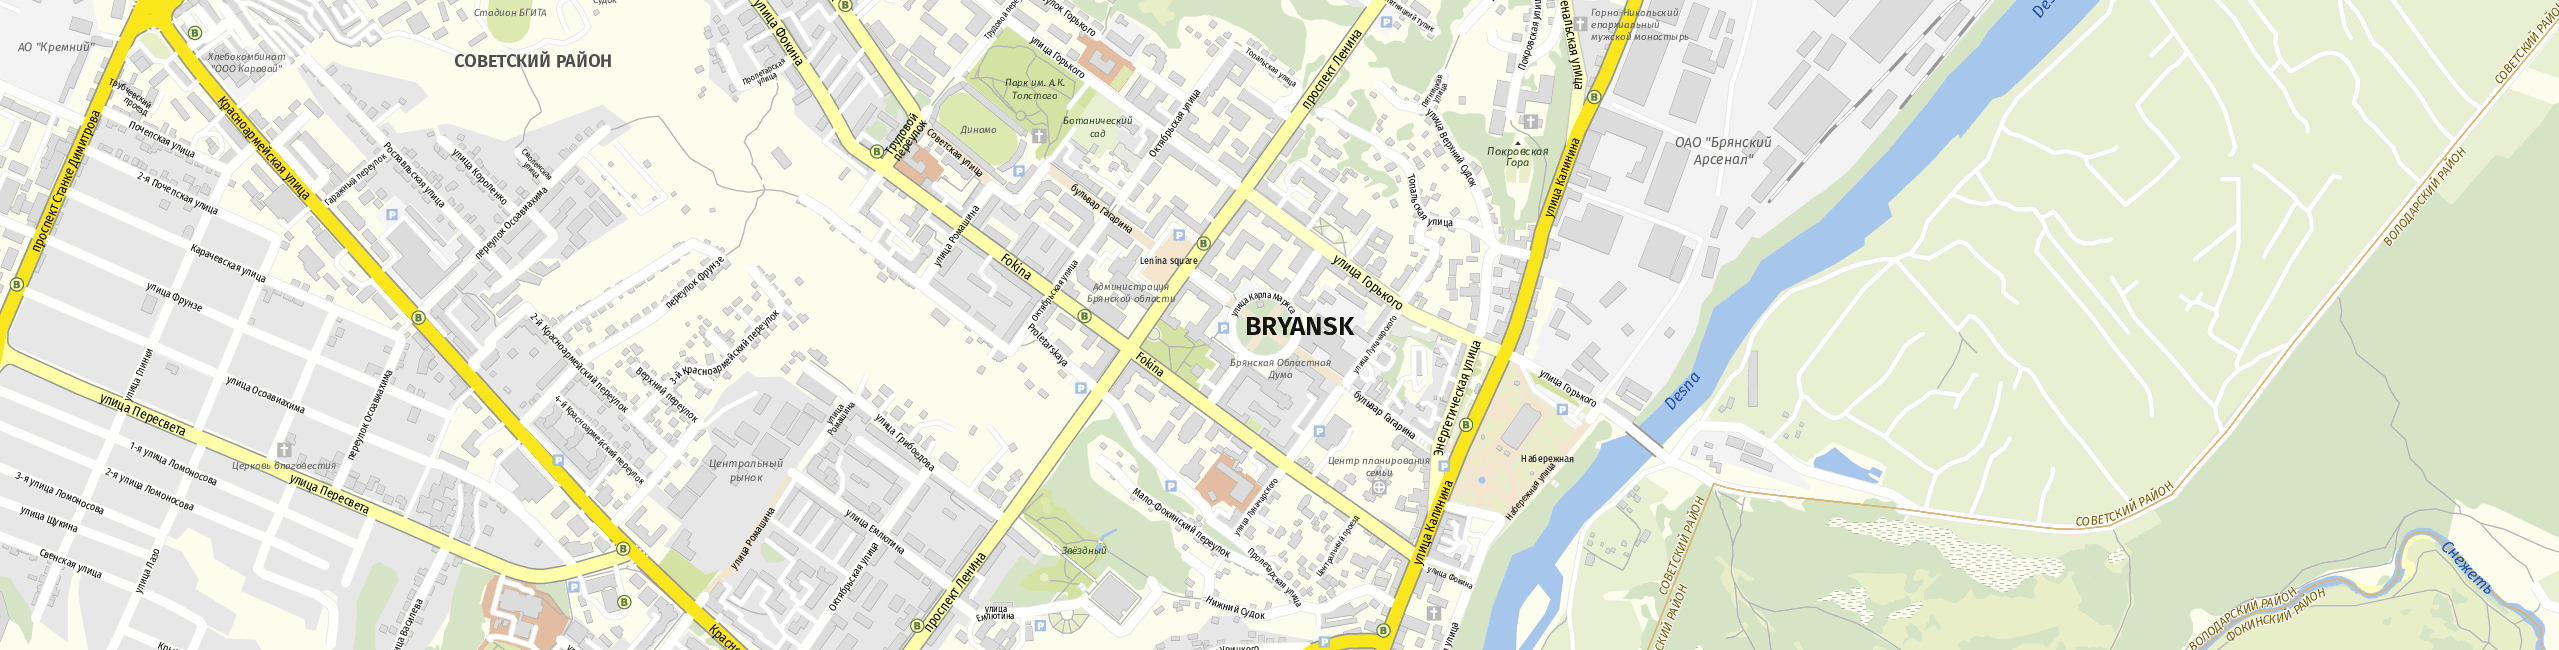 Stadtplan Brjansk zum Downloaden.